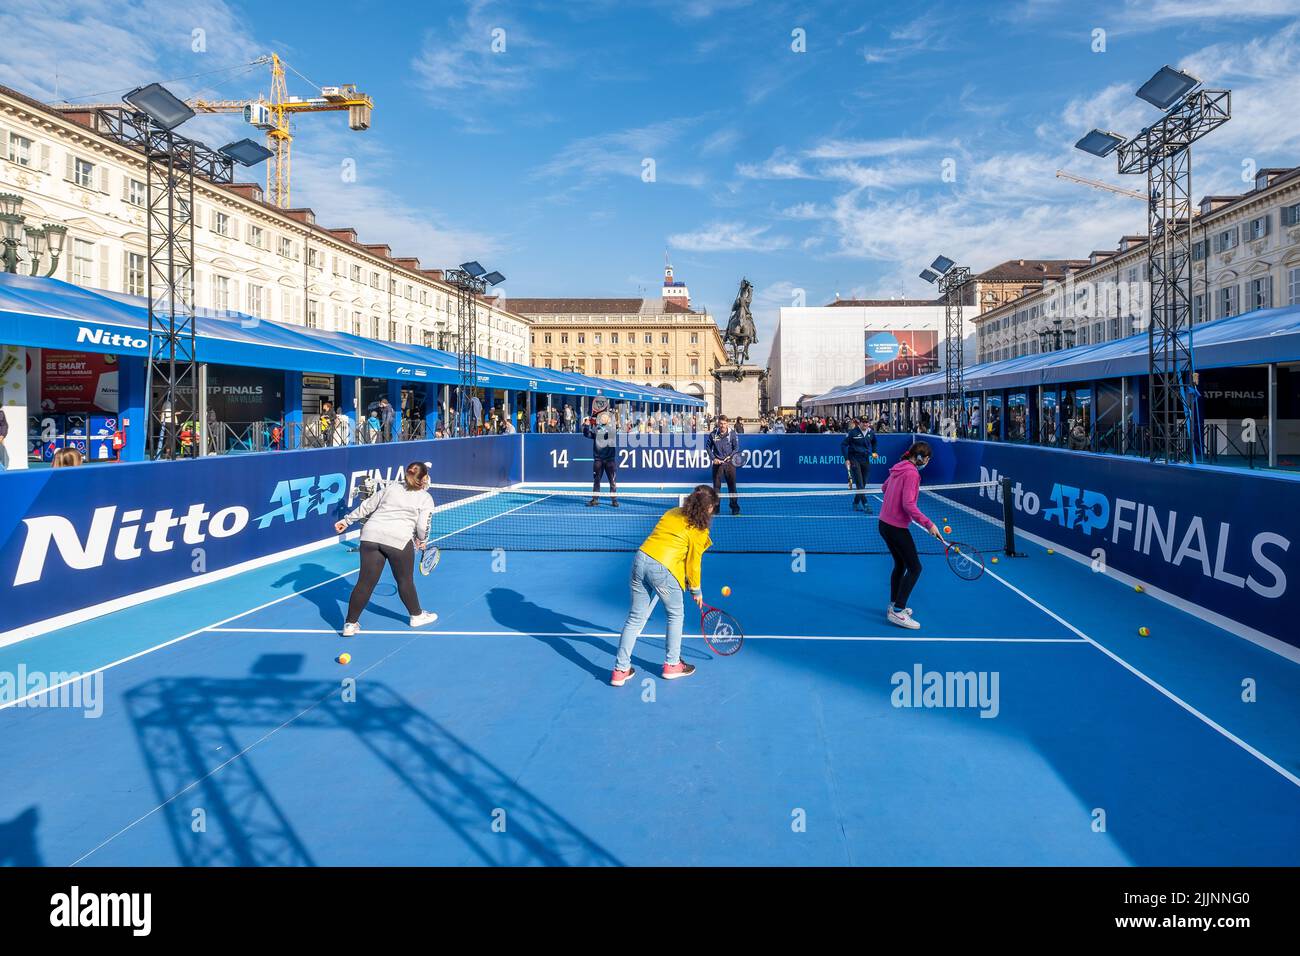 Les joueurs jouant au tennis pendant les finales de Nitto ATP en Italie Banque D'Images